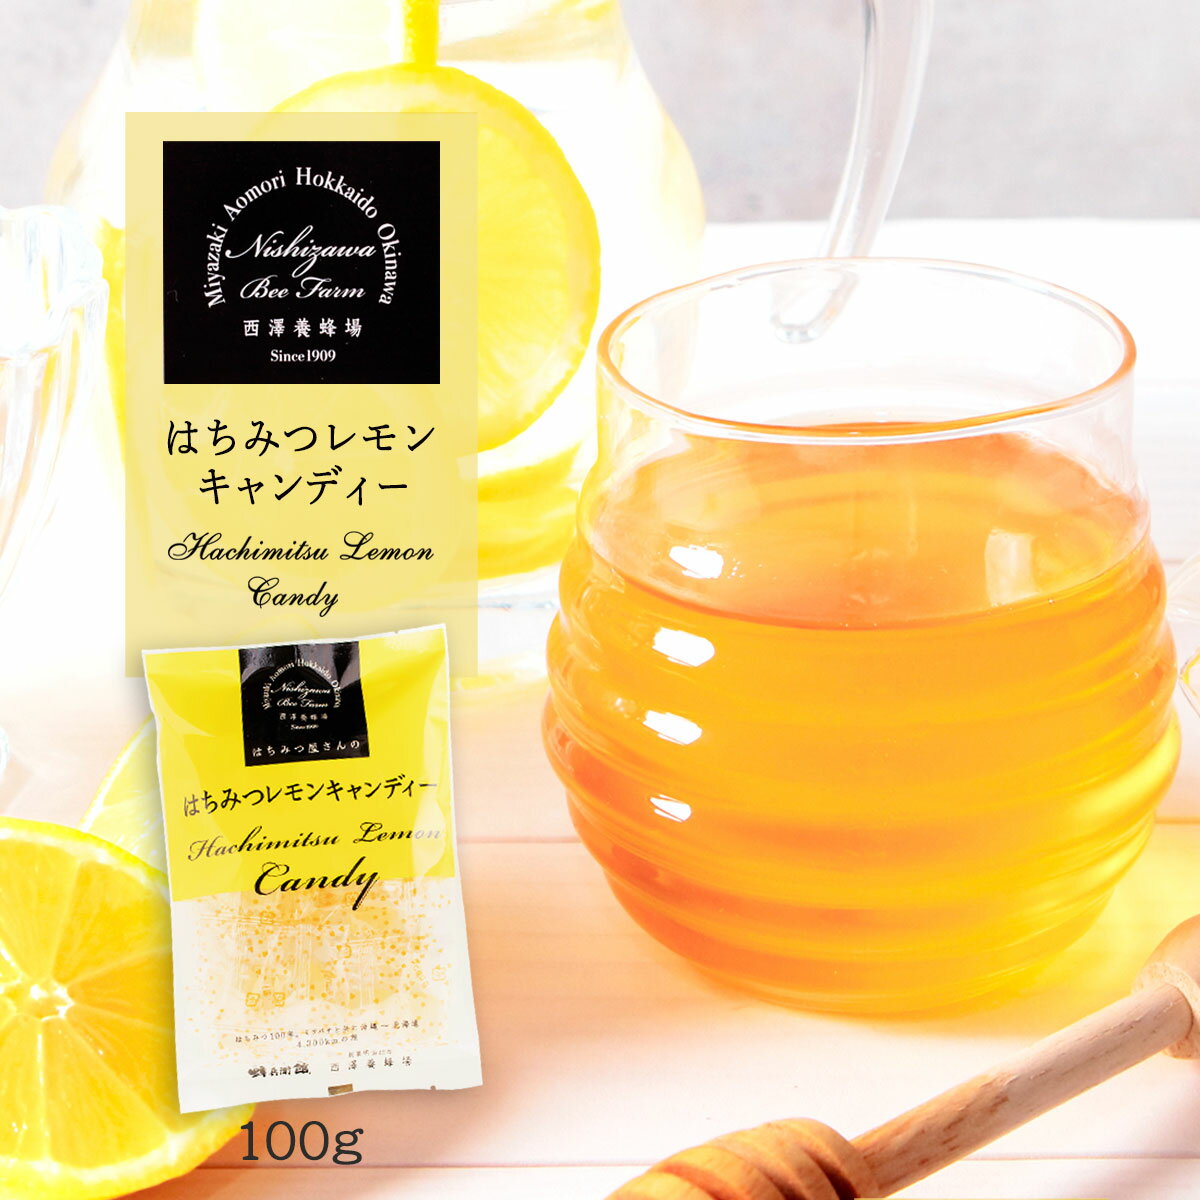 宮崎蜂蜜はちみつハニー美容健康[西澤養蜂場]はちみつレモンキャンディー100gのポイント対象リンク